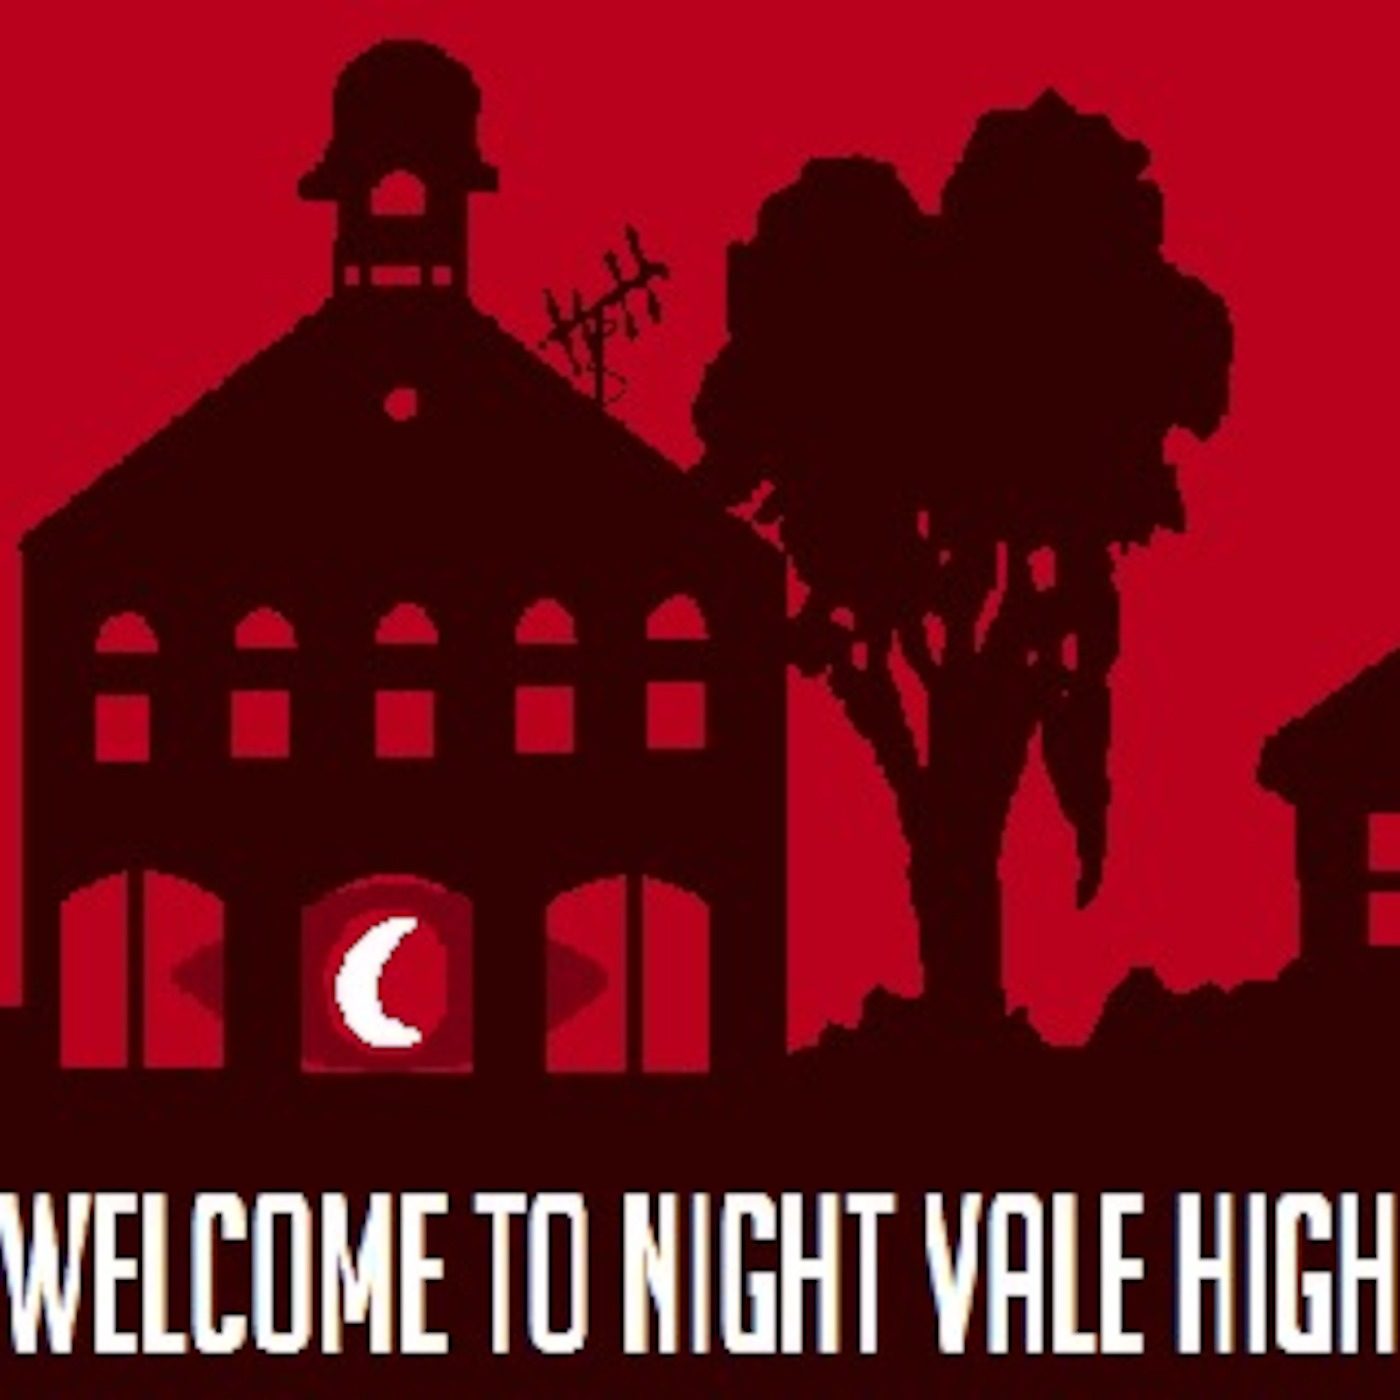 Night Vale High